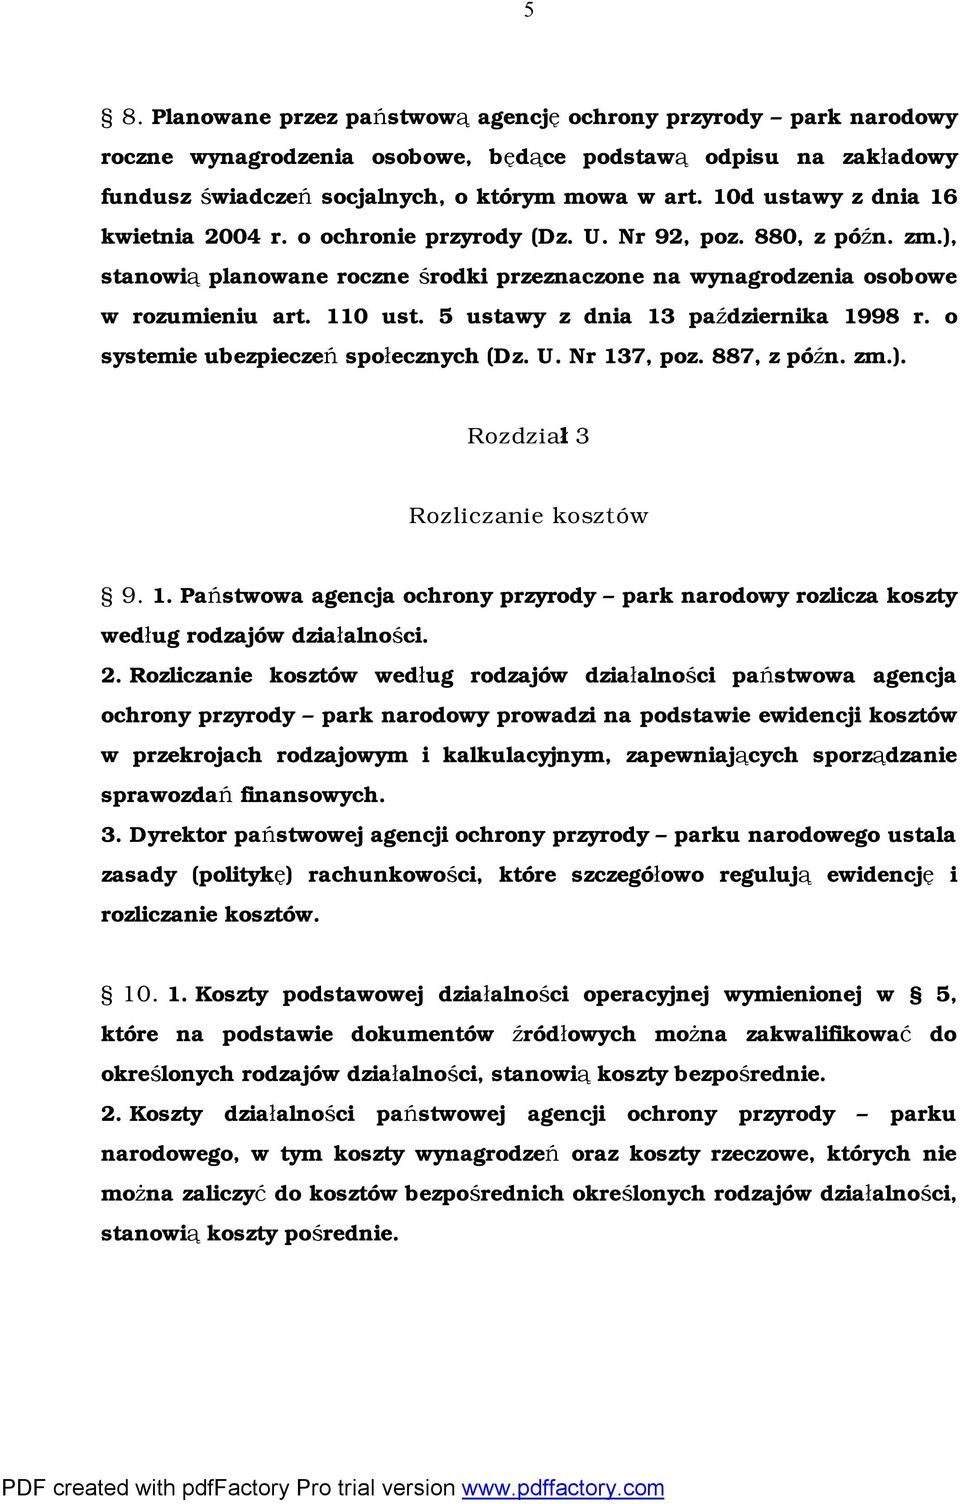 5 ustawy z dnia 13 października 1998 r. o systemie ubezpieczeń społecznych (Dz. U. Nr 137, poz. 887, z późn. zm.). Rozdział 3 Rozliczanie kosztów 9. 1. Państwowa agencja ochrony przyrody park narodowy rozlicza koszty według rodzajów działalności.